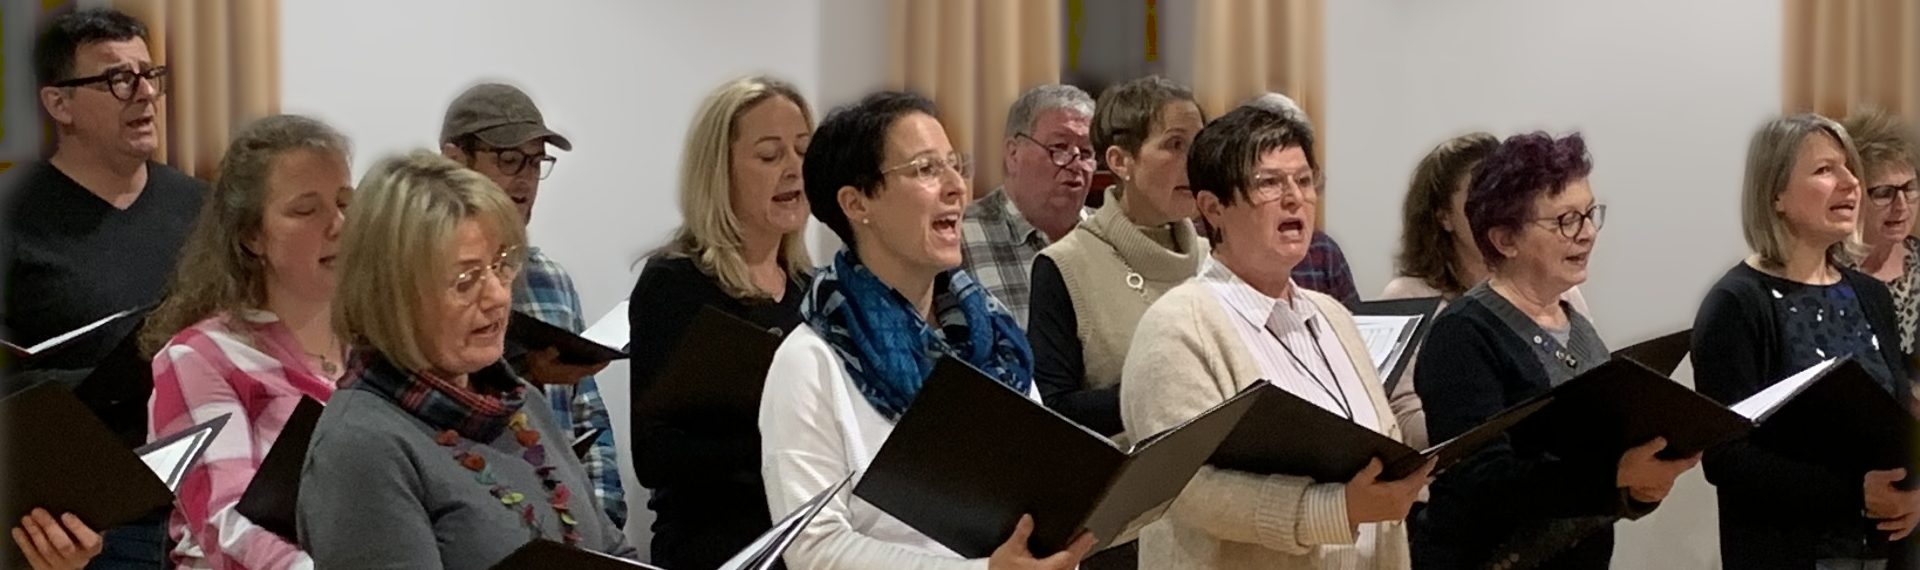 Gesangverein umrahmt die Maiandacht bei der Mariengrotte